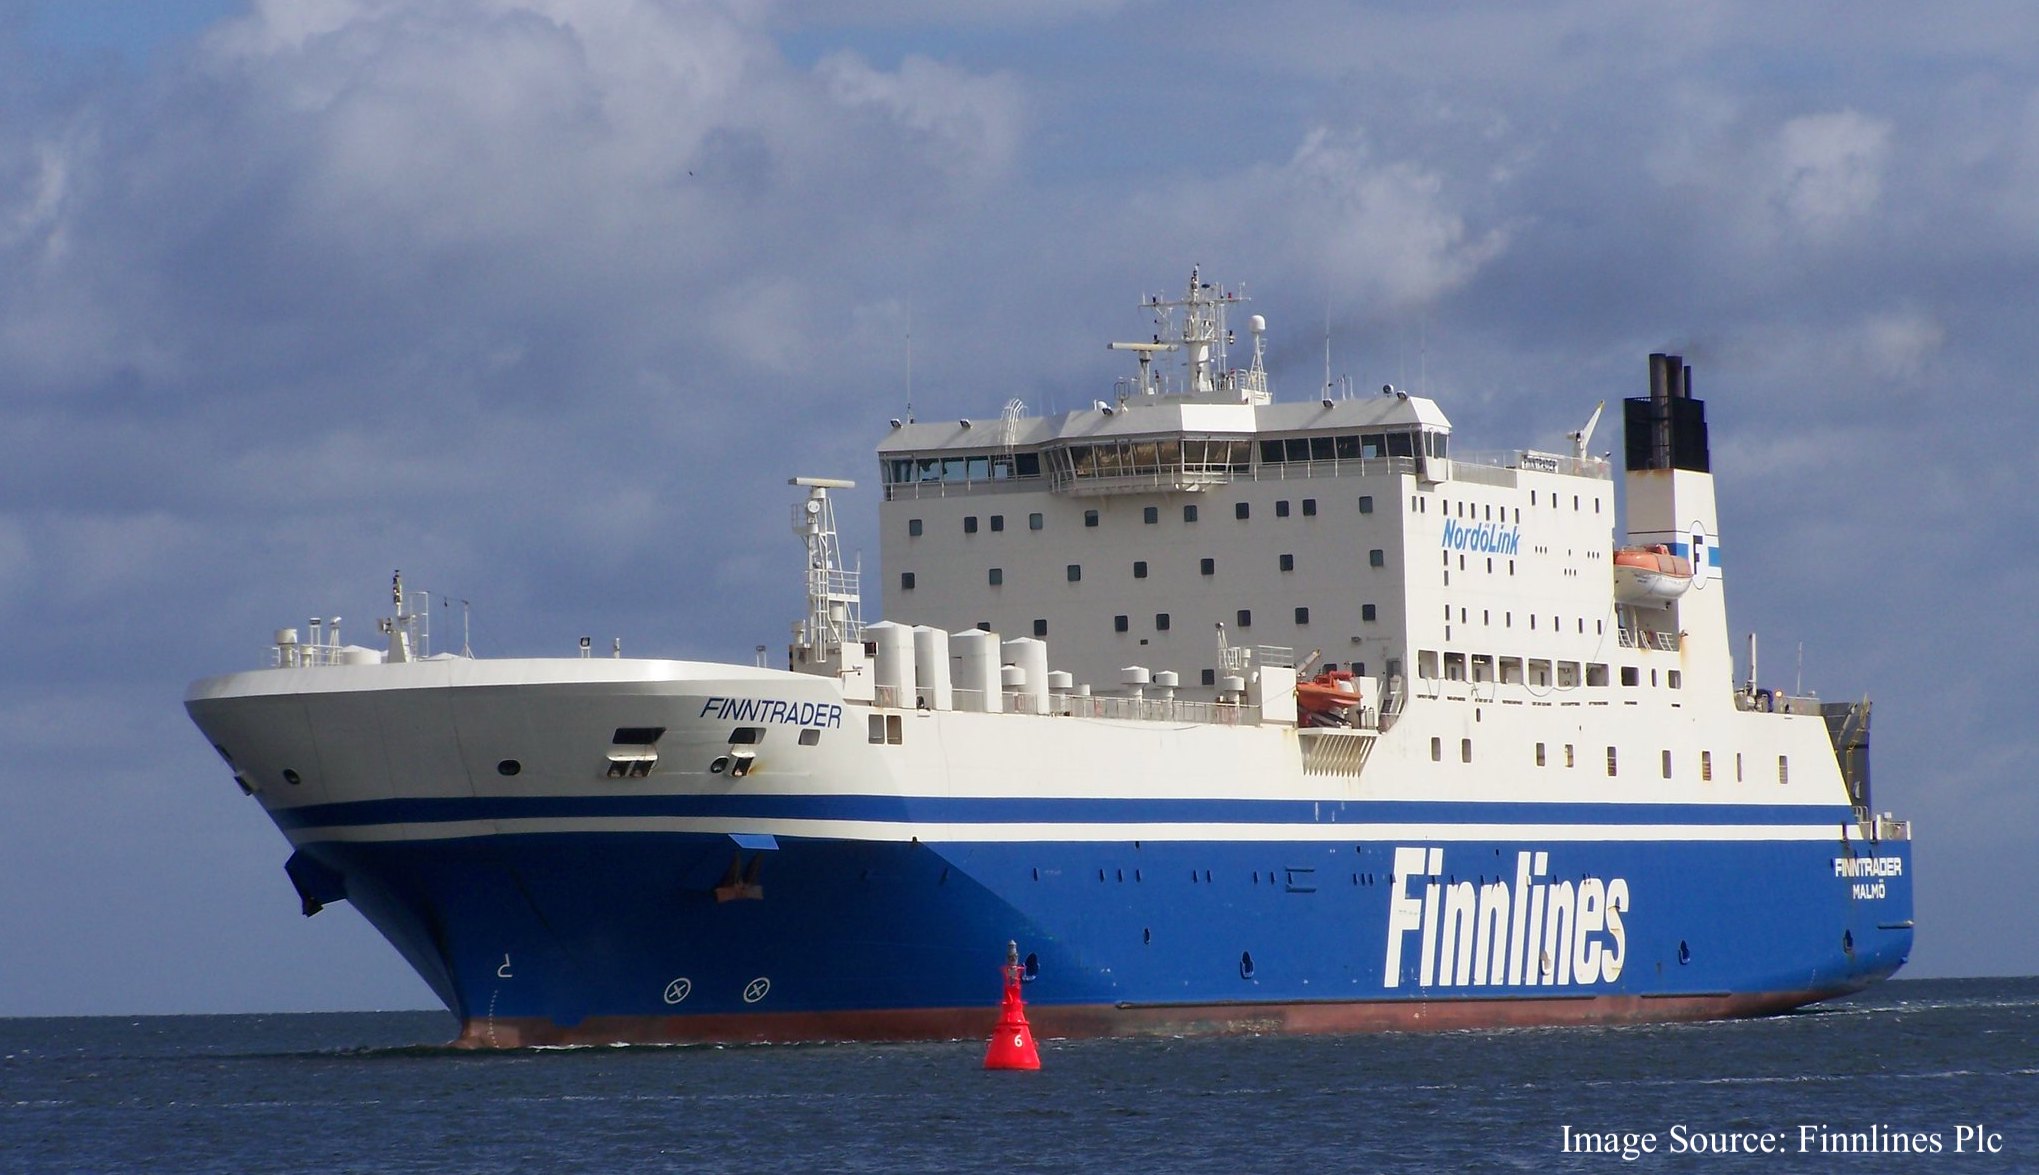 Finnlines - Finntrader জাহাজের ছবি